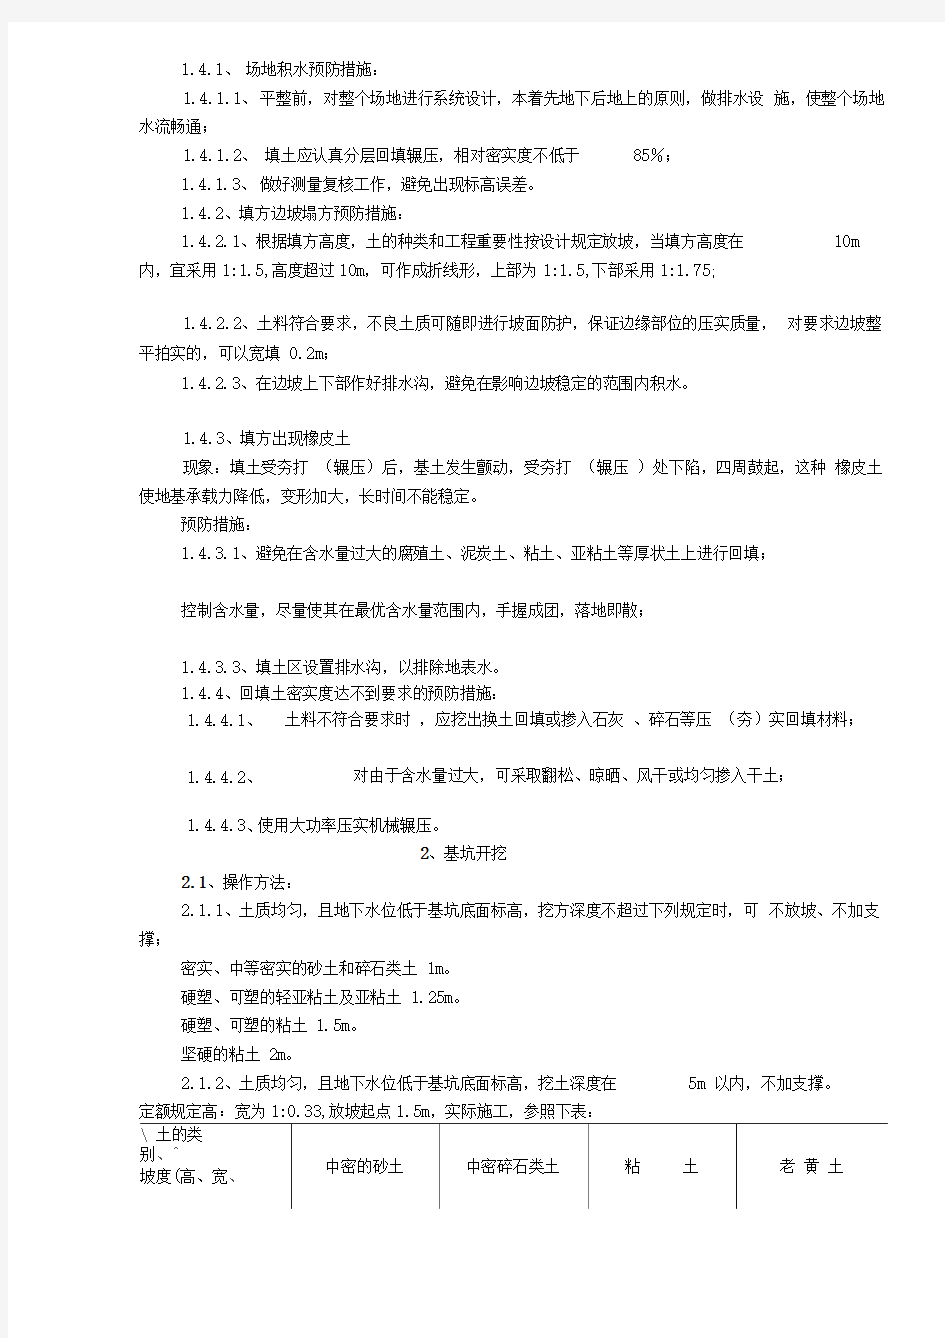 土方工程作业指导书(doc6)(1)(1)